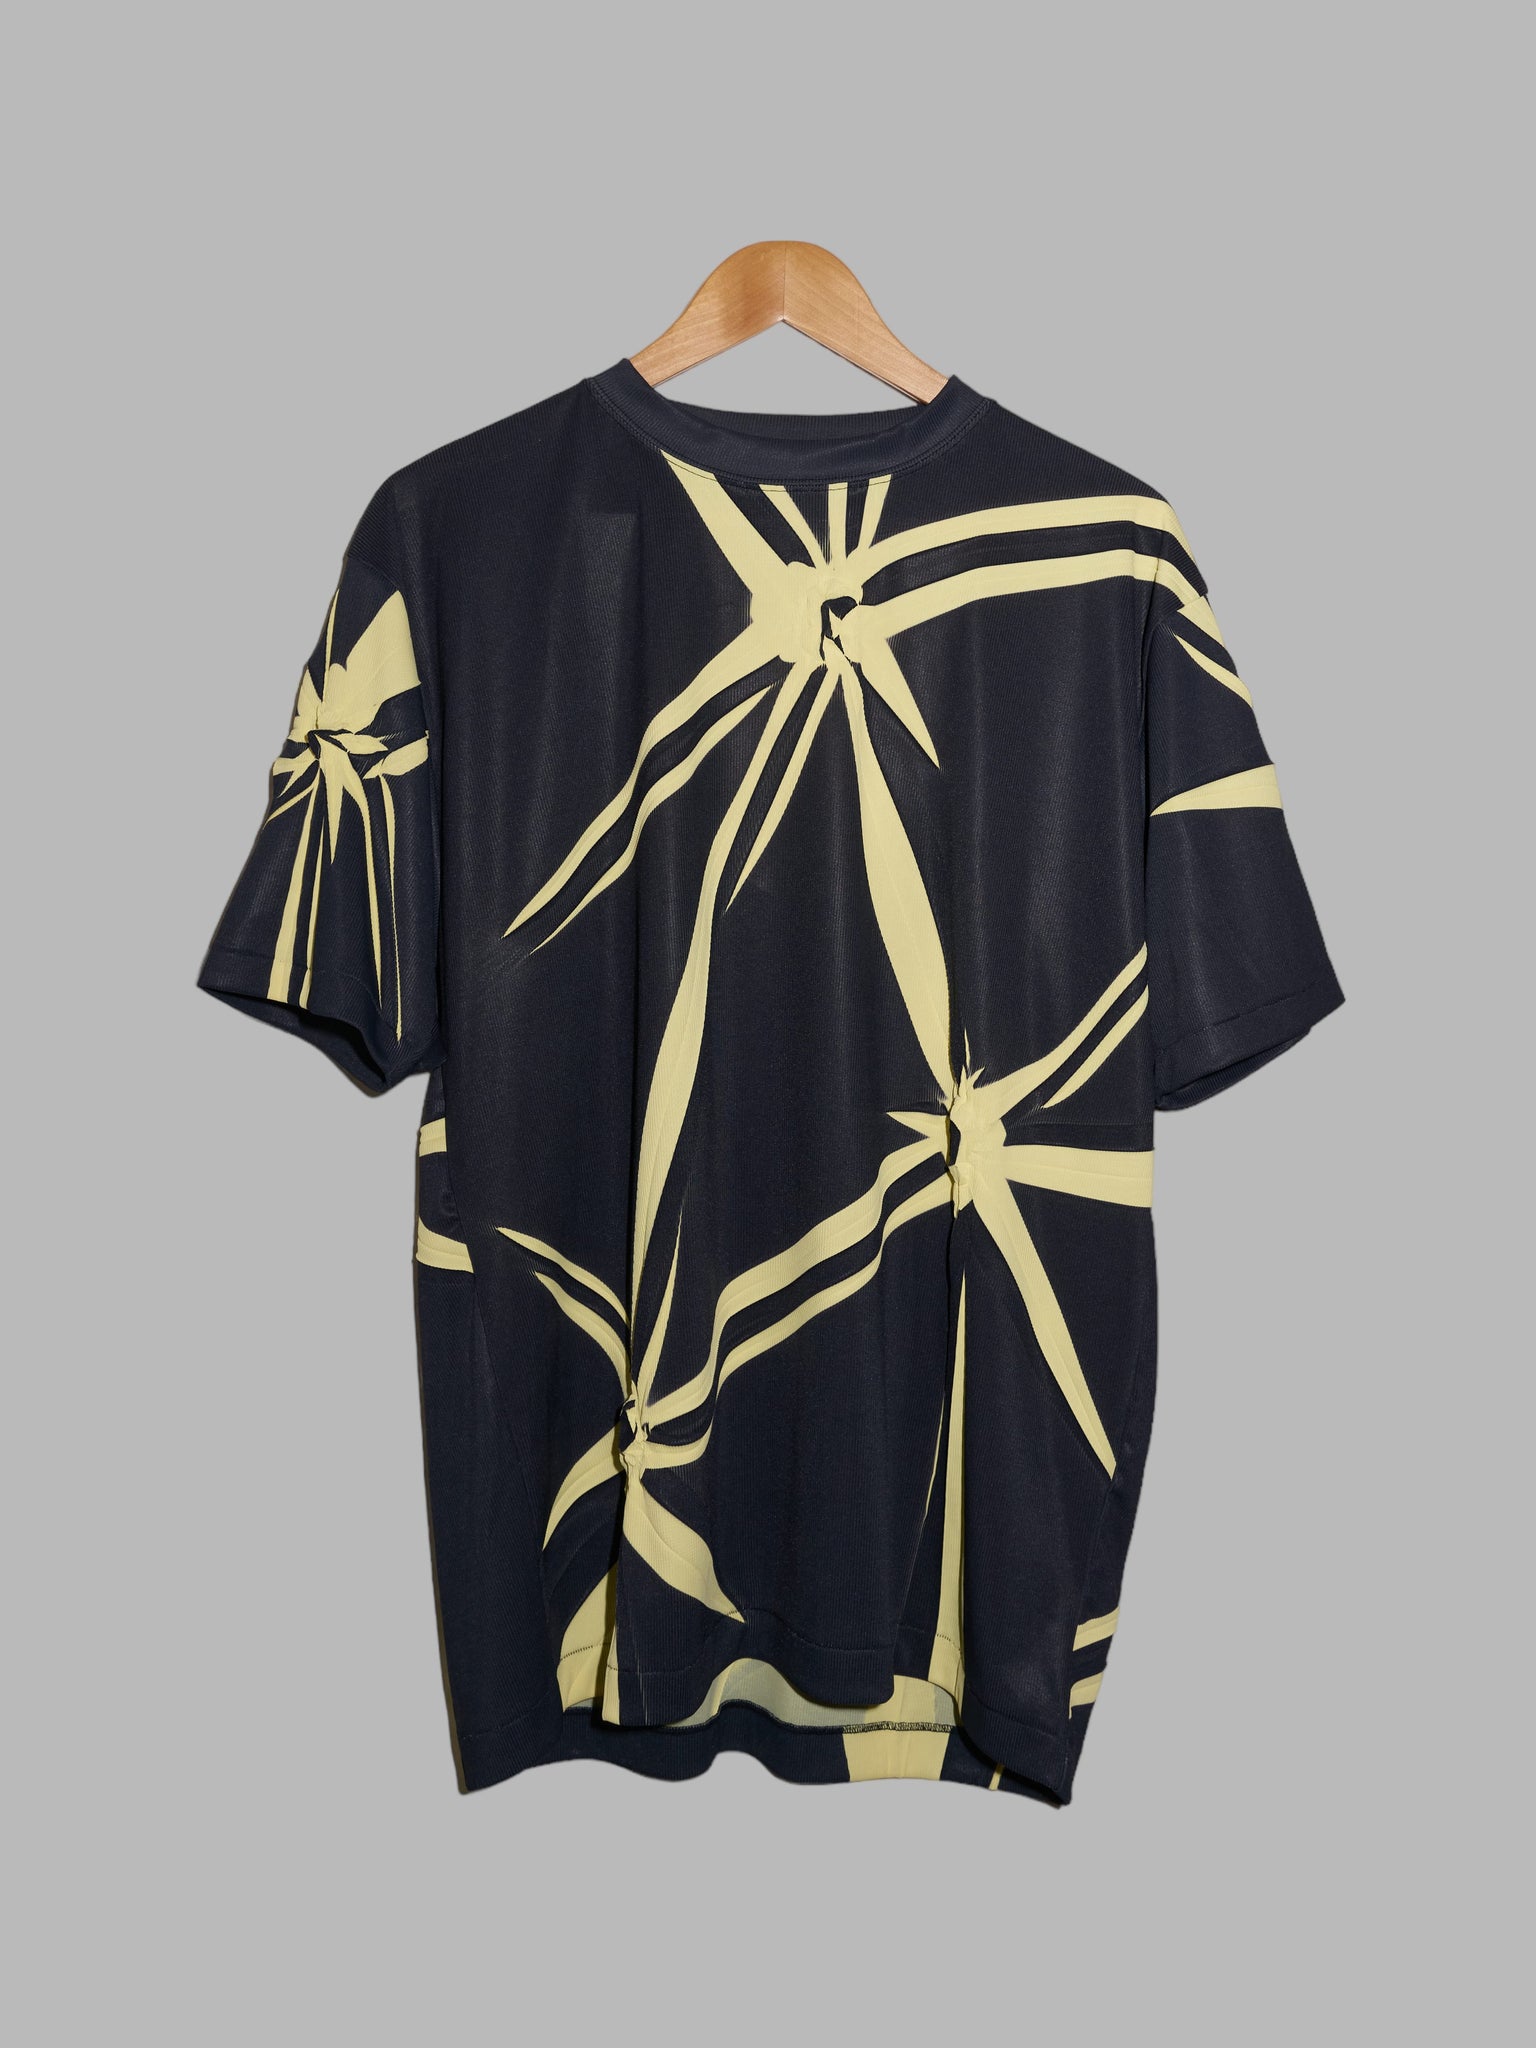 Yoshiyuki Konishi Ficce Uomo 1990s black polyester shibori-dyed t-shirt